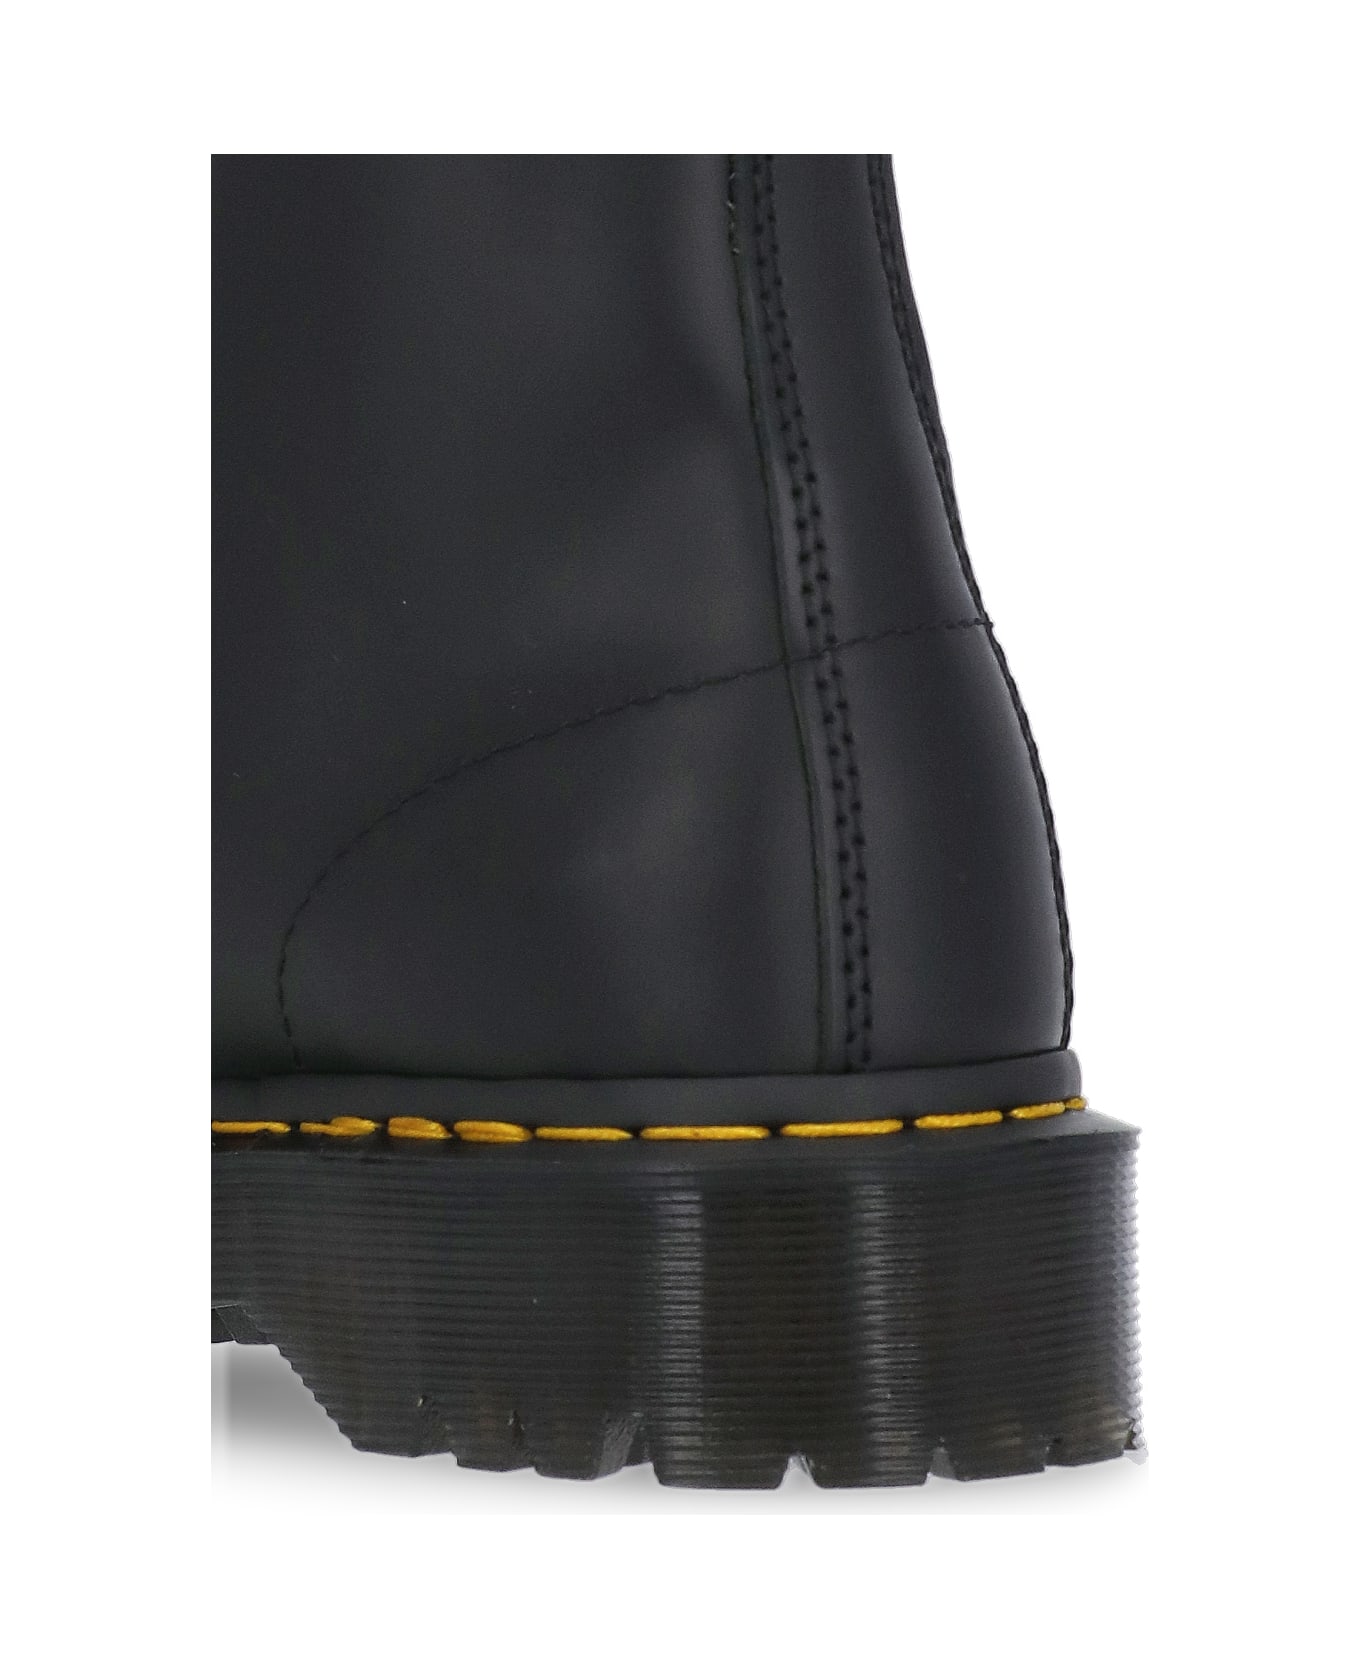 Dr. Martens 1460 Bex Boots - Black ブーツ